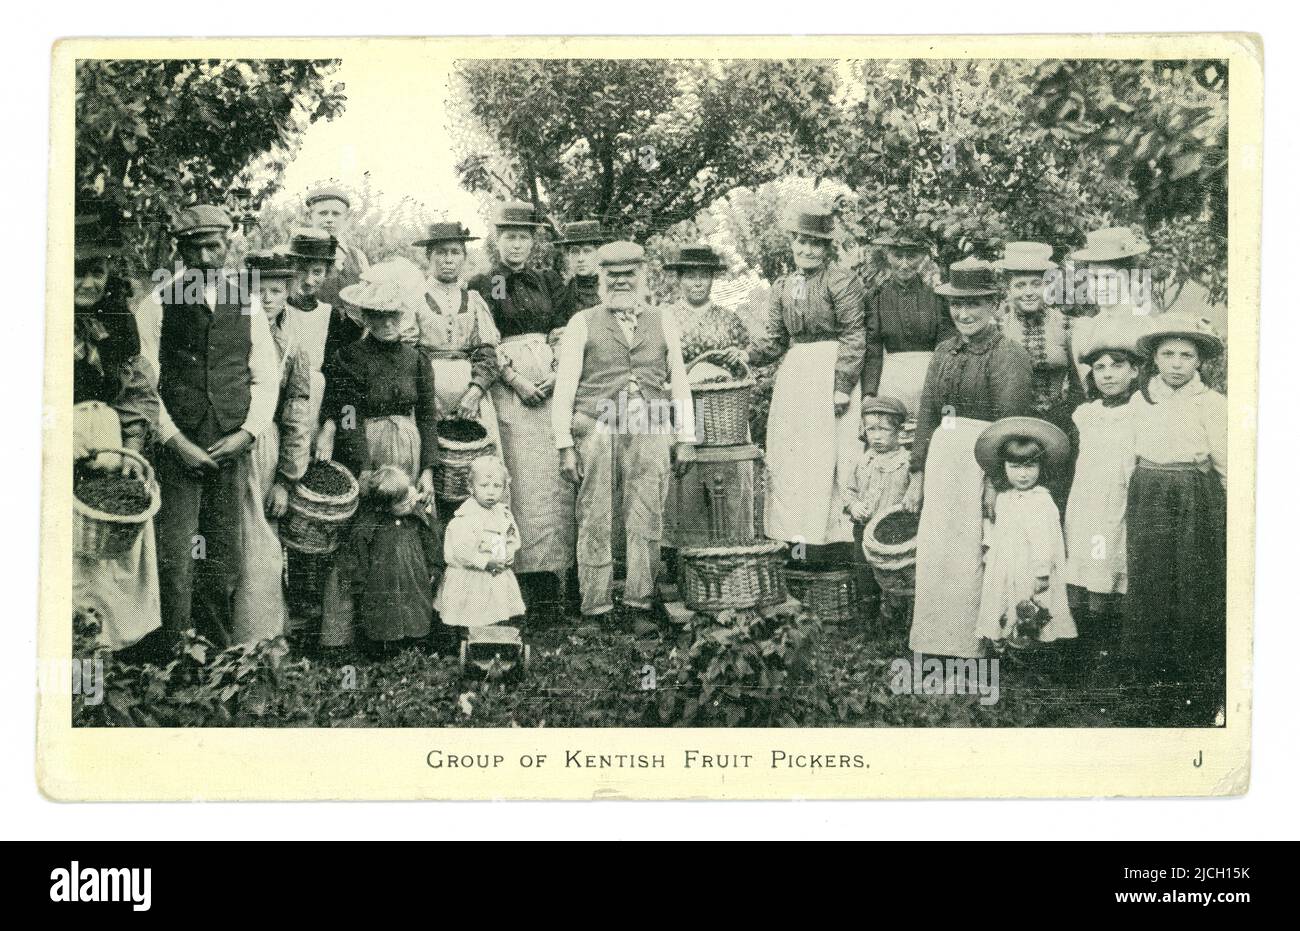 Carte postale originale de l'époque édouardienne représentant un groupe de cueilleurs de fruits kentish, cueillant des cerises, classe ouvrière pauvre, en vacances de travail, vers.1904, Kent, Angleterre, Royaume-Uni Banque D'Images